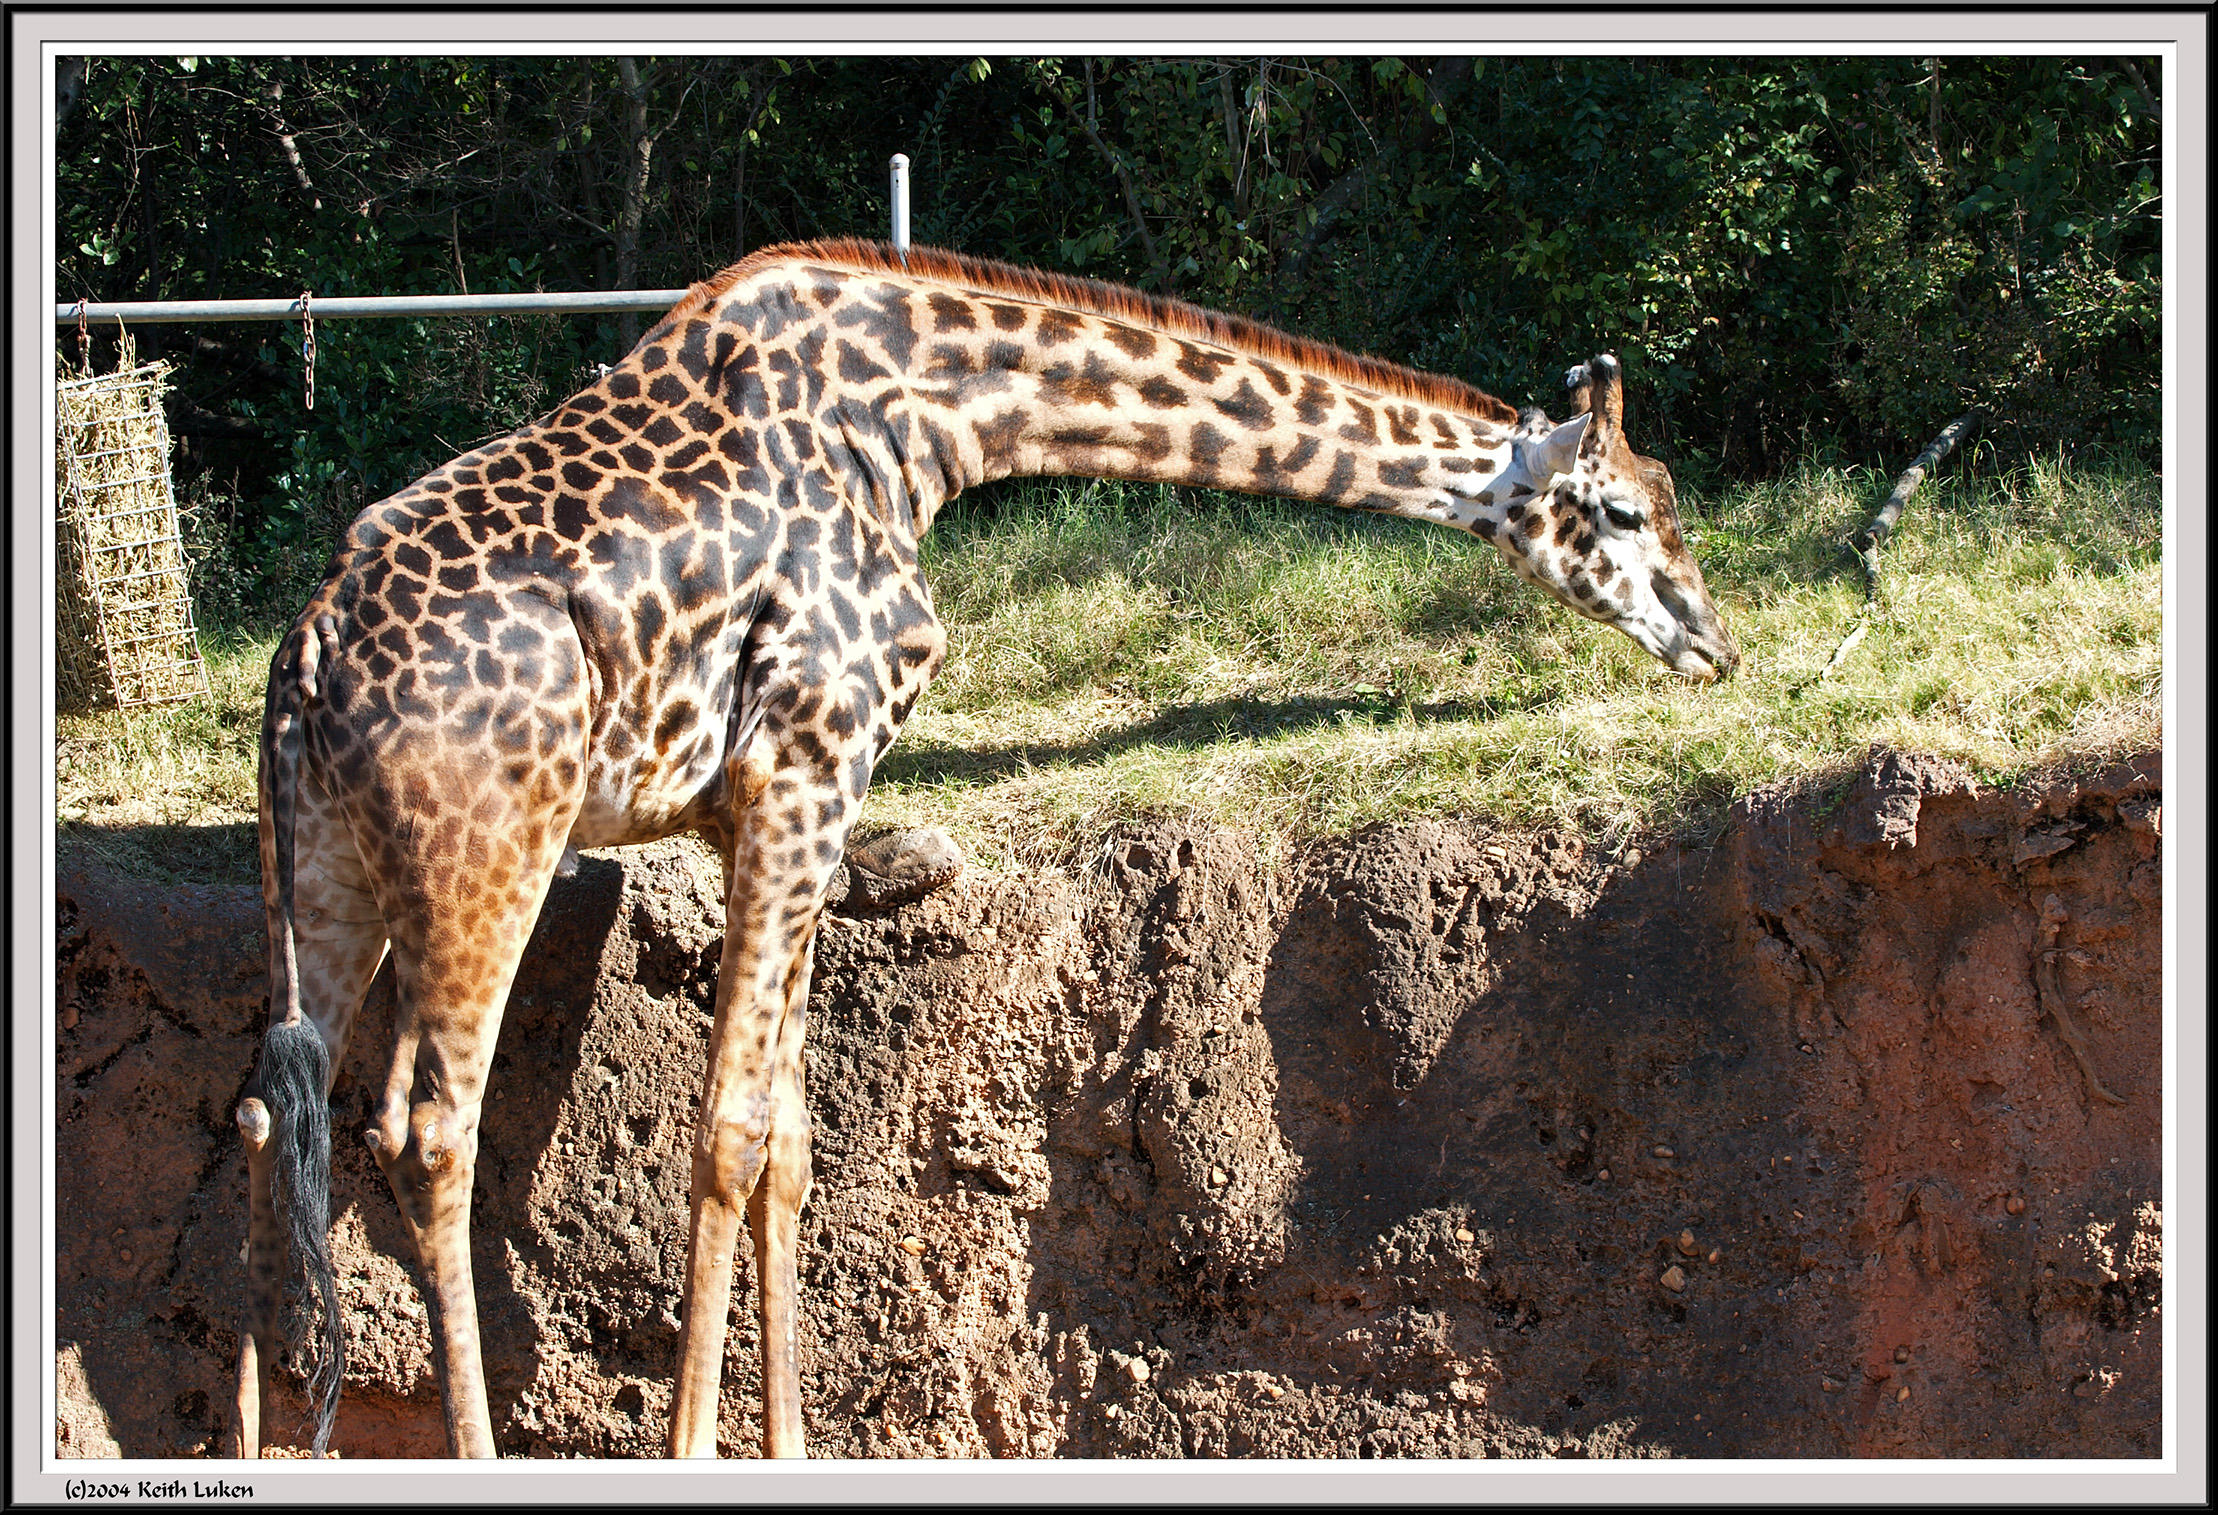 Giraffe Eating - IMG_0957.jpg